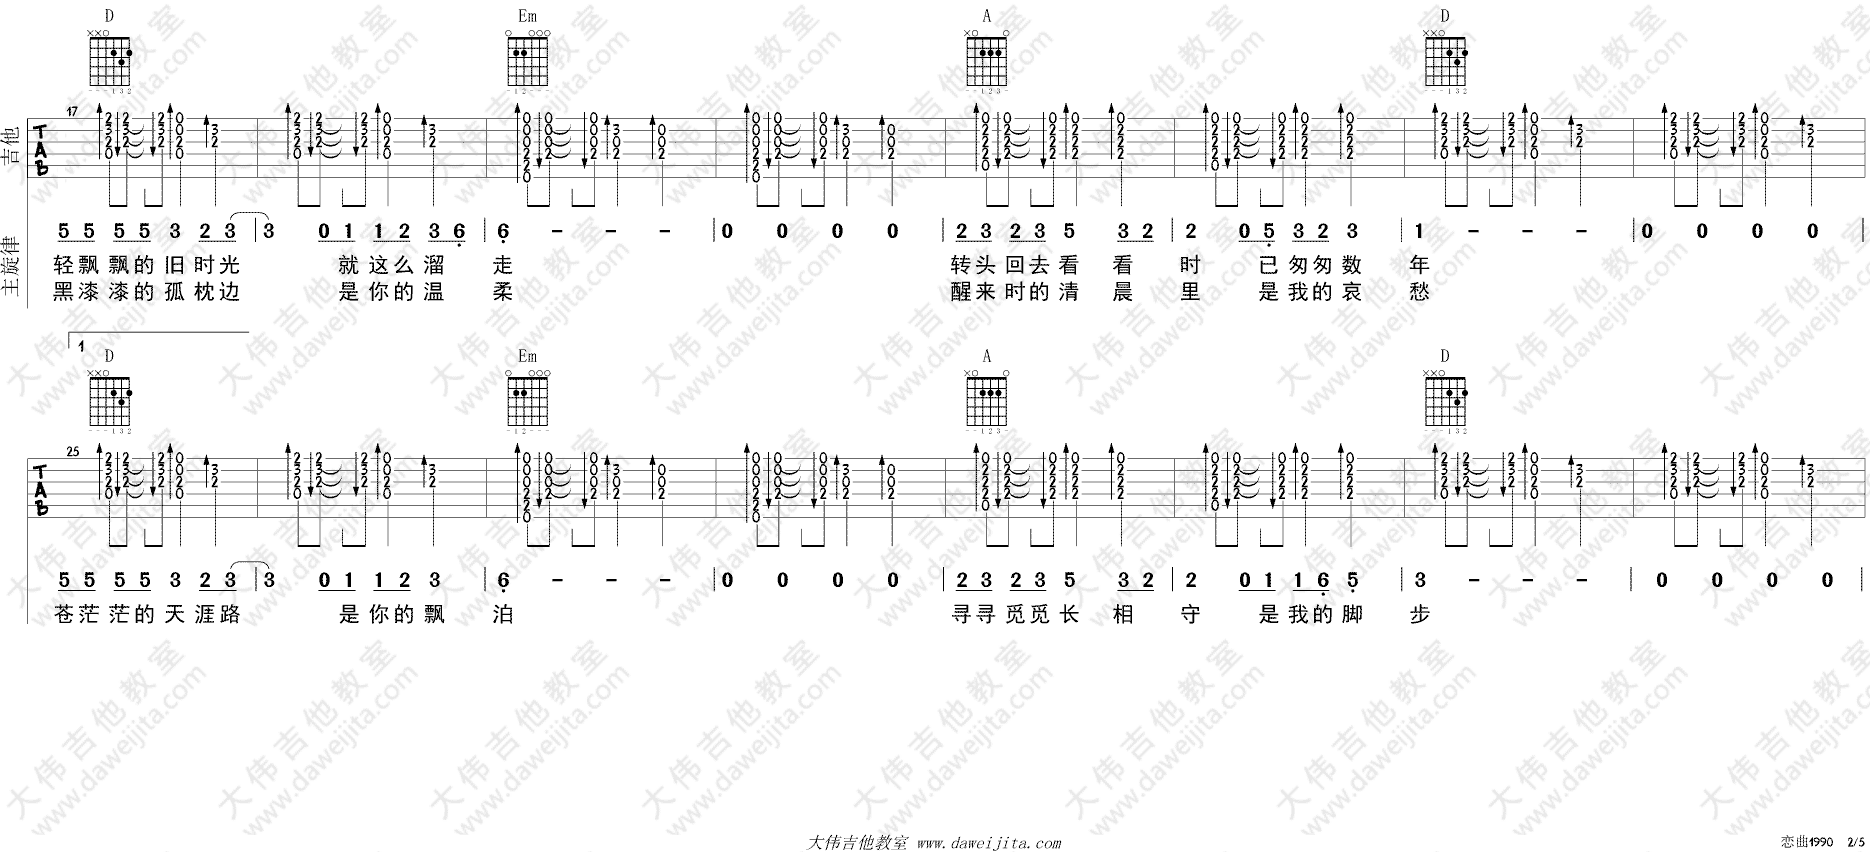 罗大佑_恋曲1990_吉他谱(D调)_Guitar_Music_Score